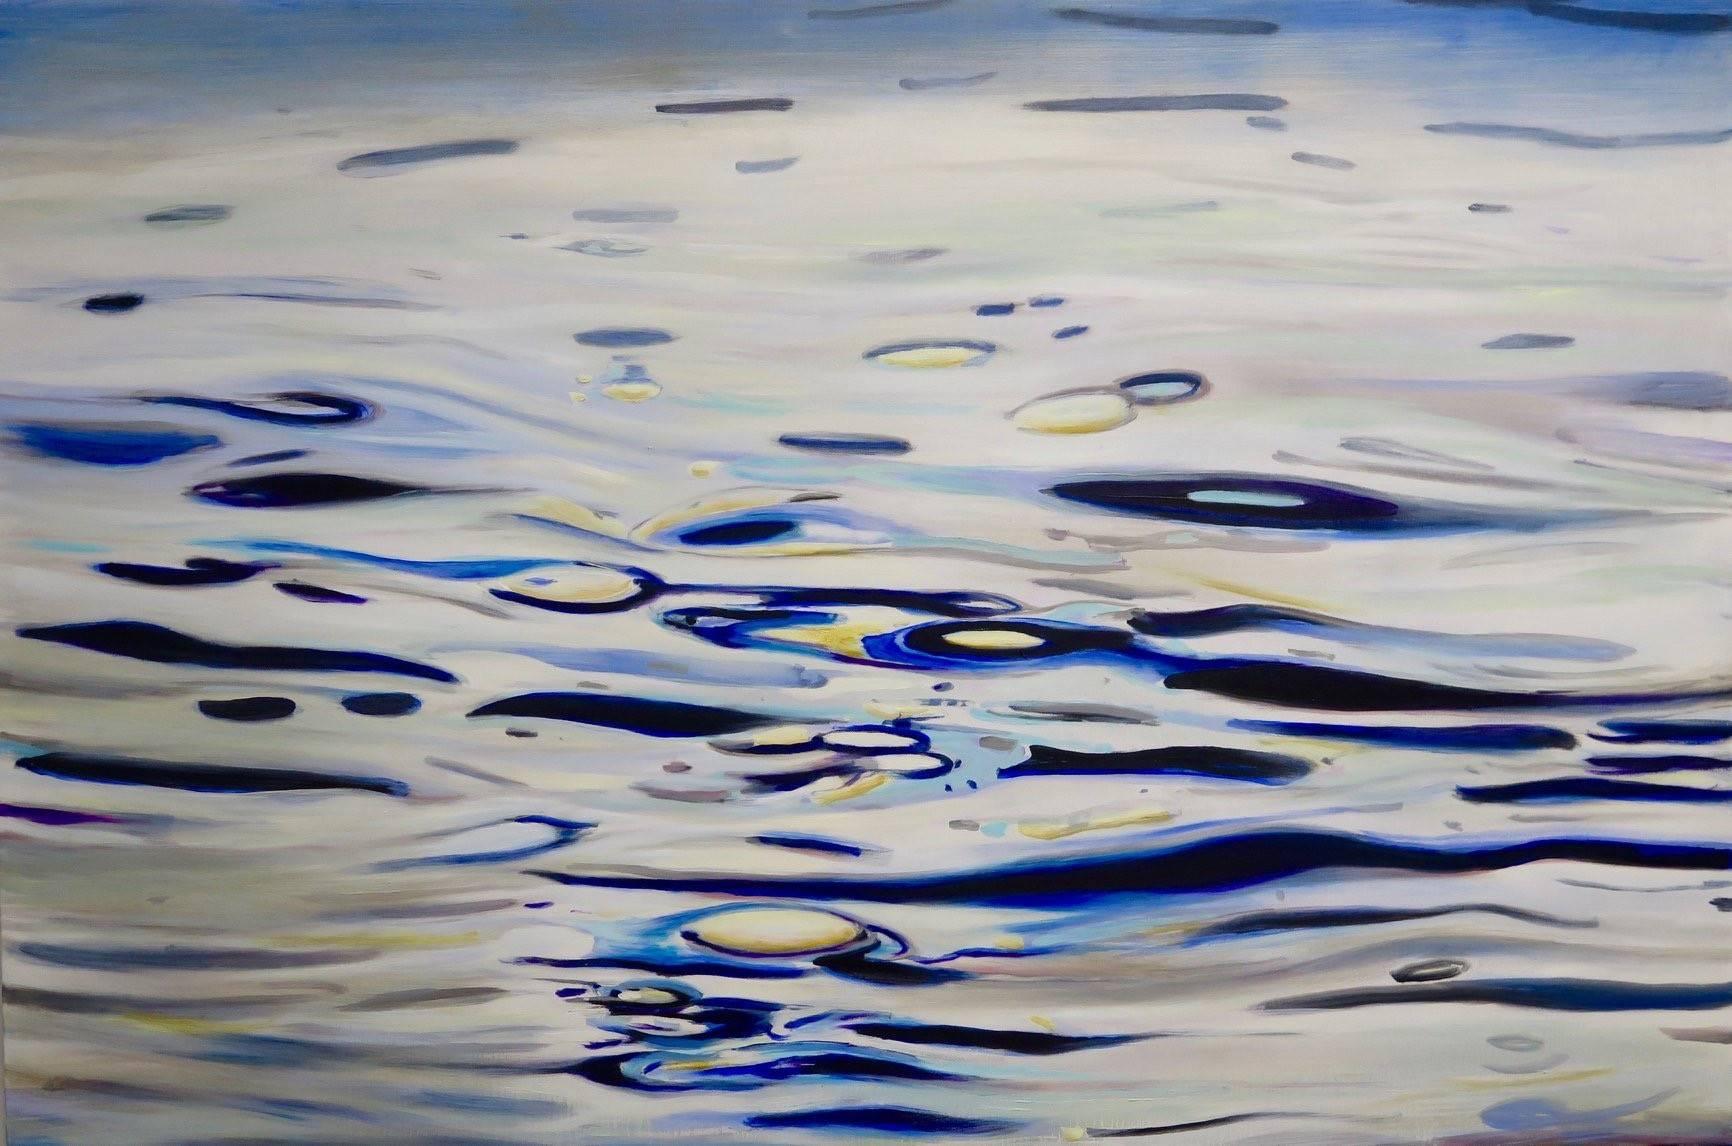 Landscape Painting Antonio Ugarte - Miami River - bleus, blancs, jaunes  48 x 60 cm